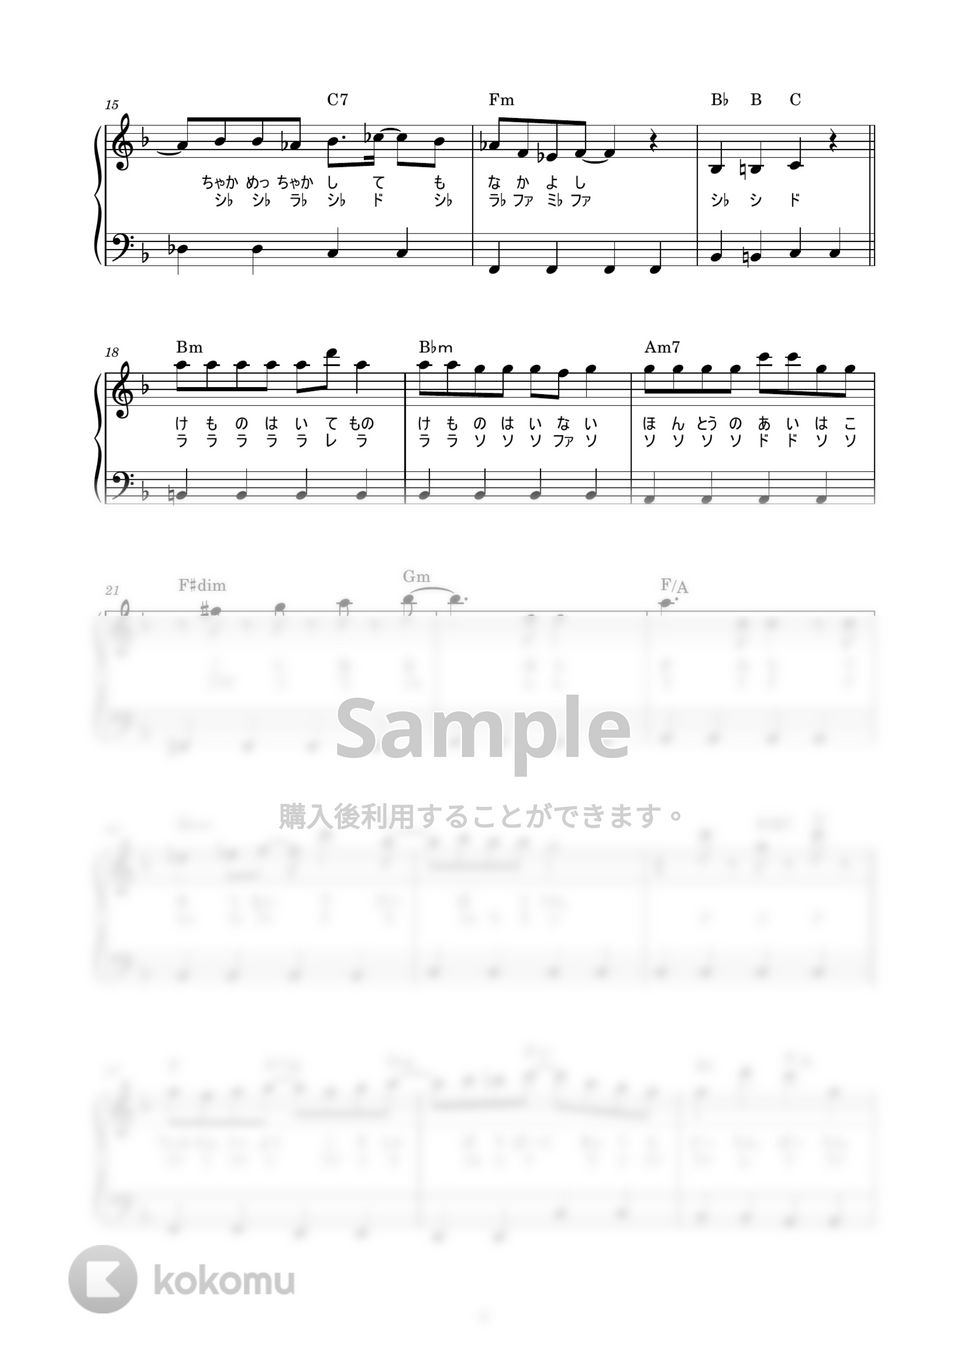 大石昌良 - ようこそジャパリパークへ (かんたん / 歌詞付き / ドレミ付き / 初心者) by piano.tokyo